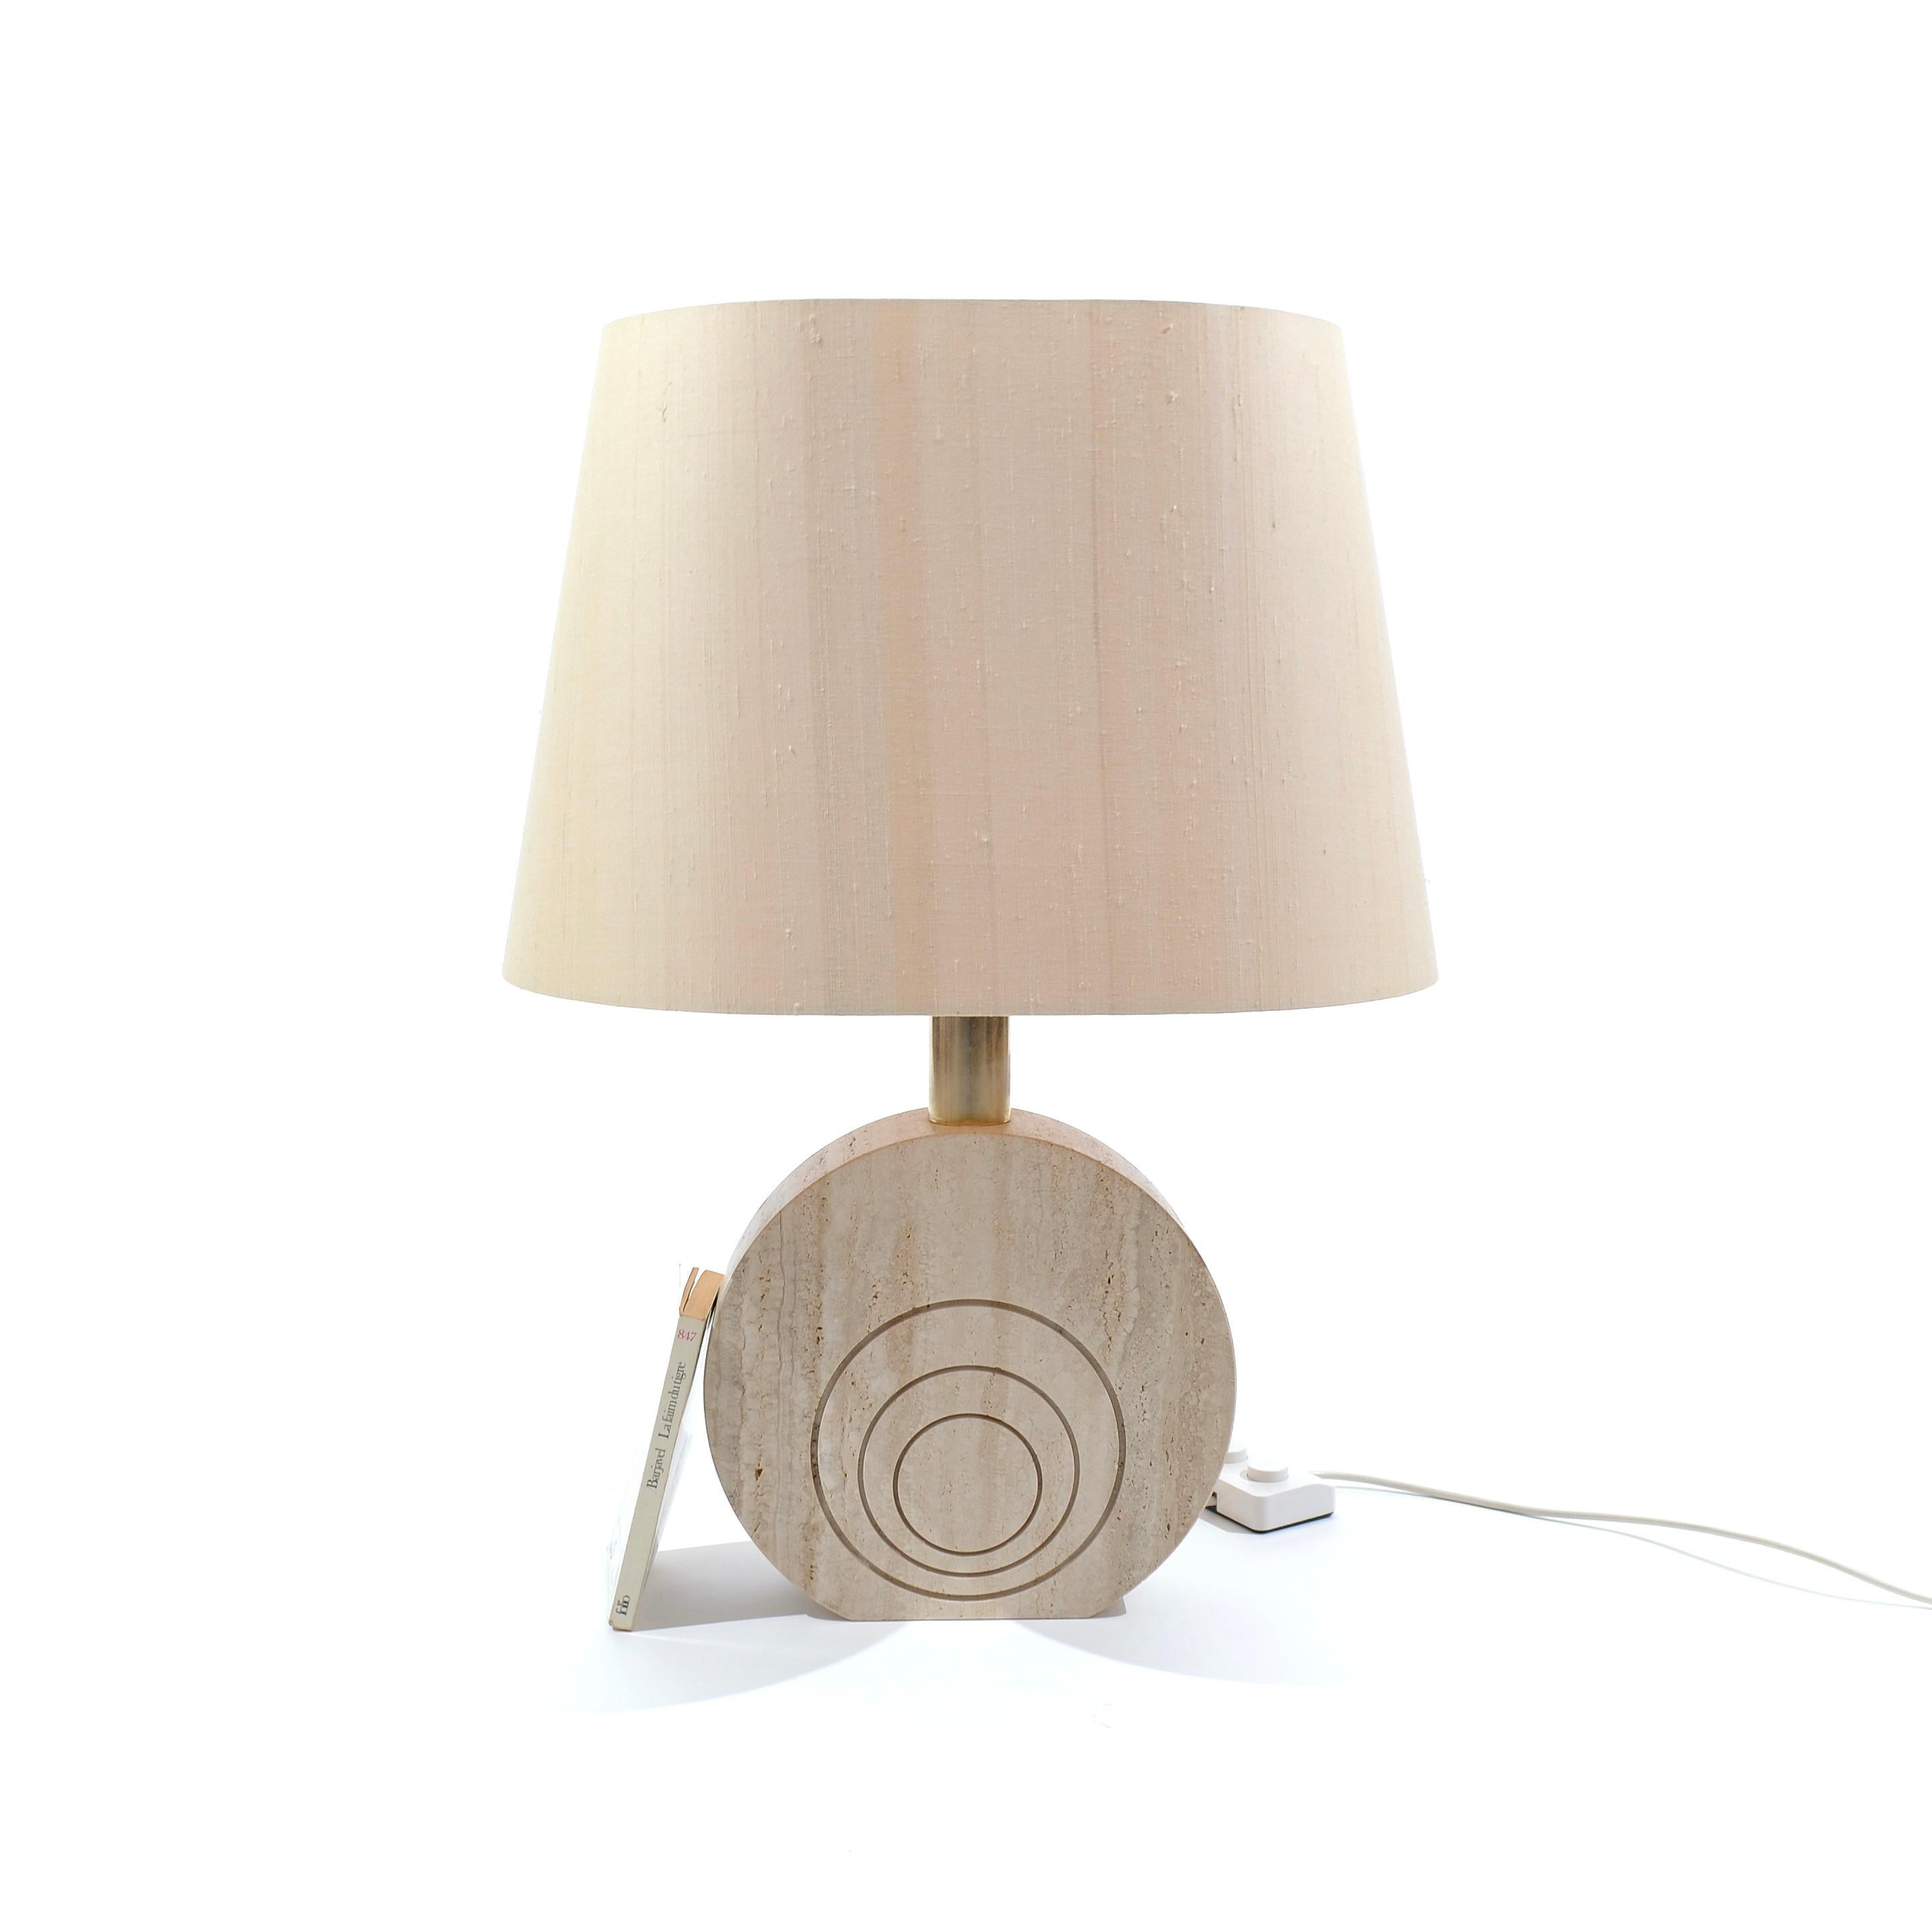 Eine dicke Scheibe aus Travertin, gekrönt von einem Messingzylinder, der einen großen Lampenschirm aus Baumwolle trägt.

Hier zeigt sich die ganze Raffinesse des italienischen Designs. Edle MATERIALIEN wurden großzügig und in perfekten Proportionen